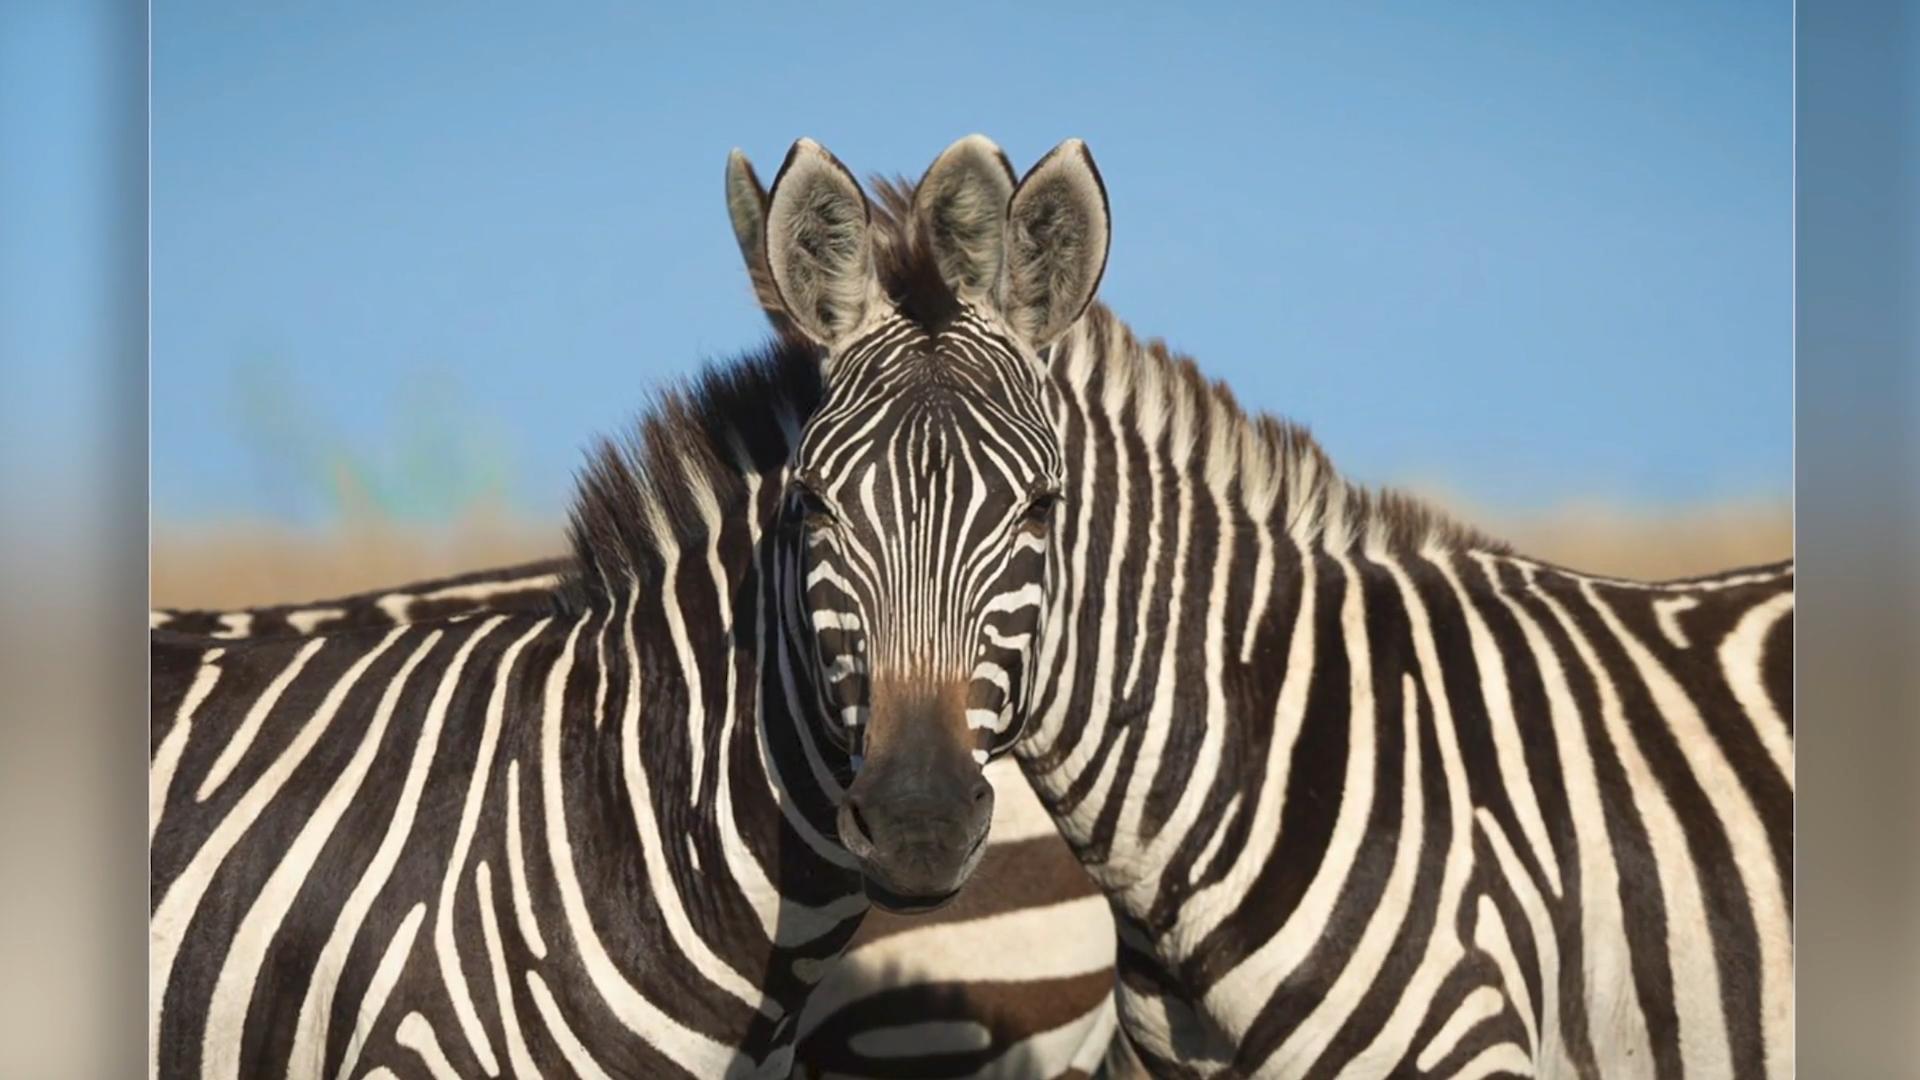 Która zebra jest z przodu - lewa czy prawa?  Iluzje optyczne